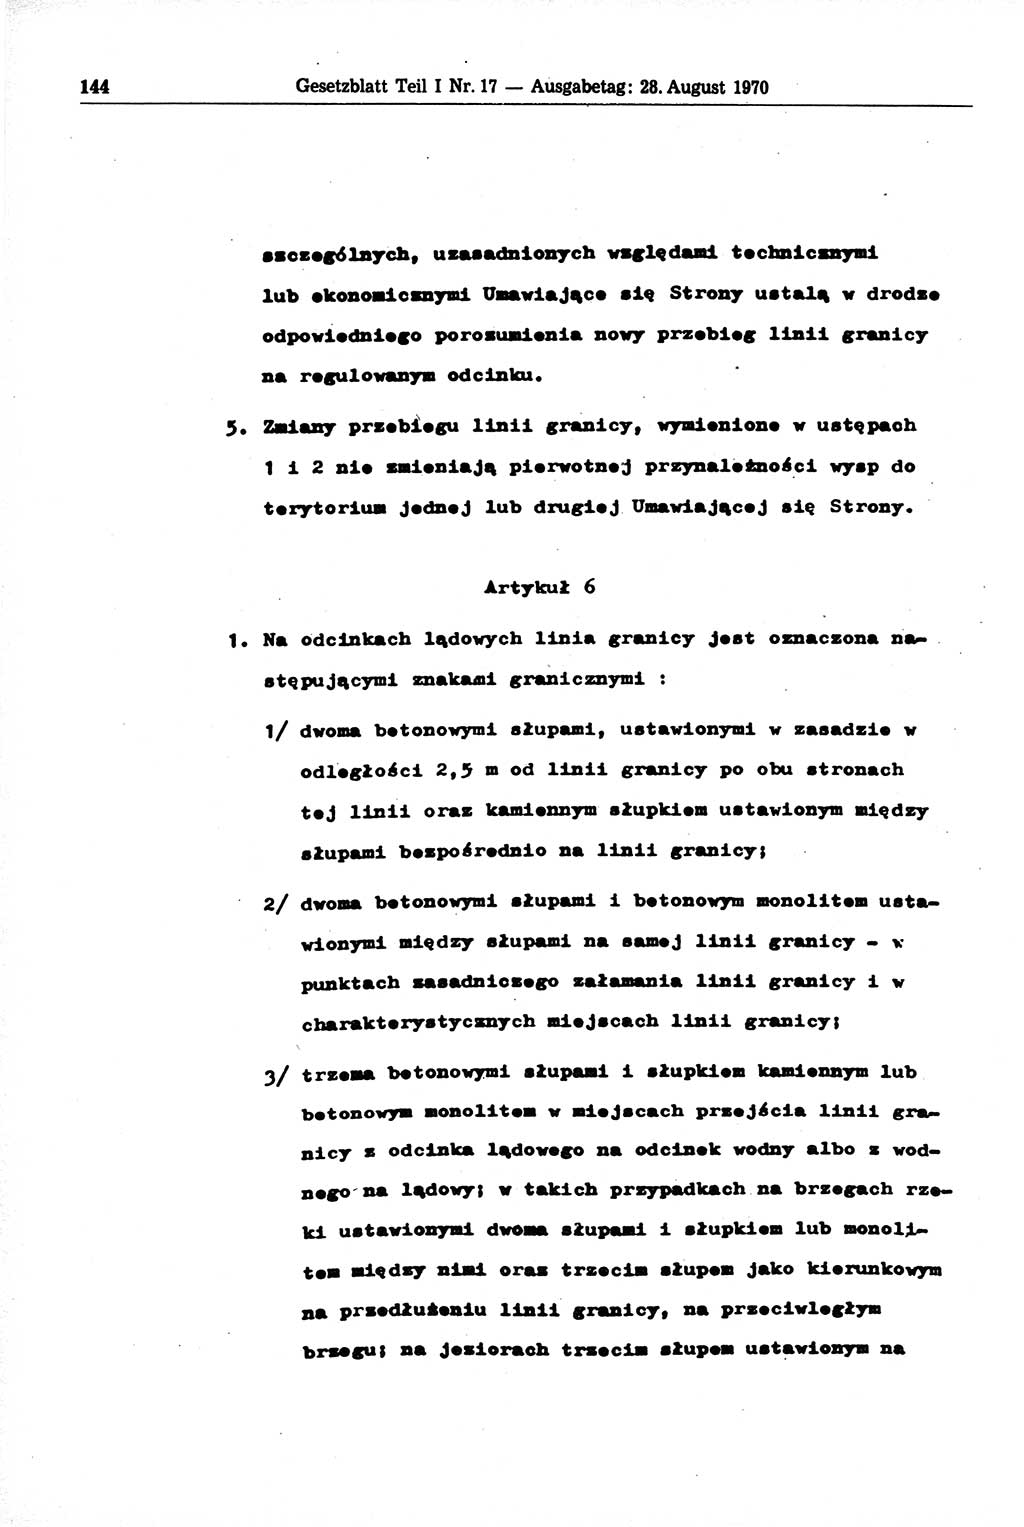 Gesetzblatt (GBl.) der Deutschen Demokratischen Republik (DDR) Teil Ⅰ 1970, Seite 144 (GBl. DDR Ⅰ 1970, S. 144)